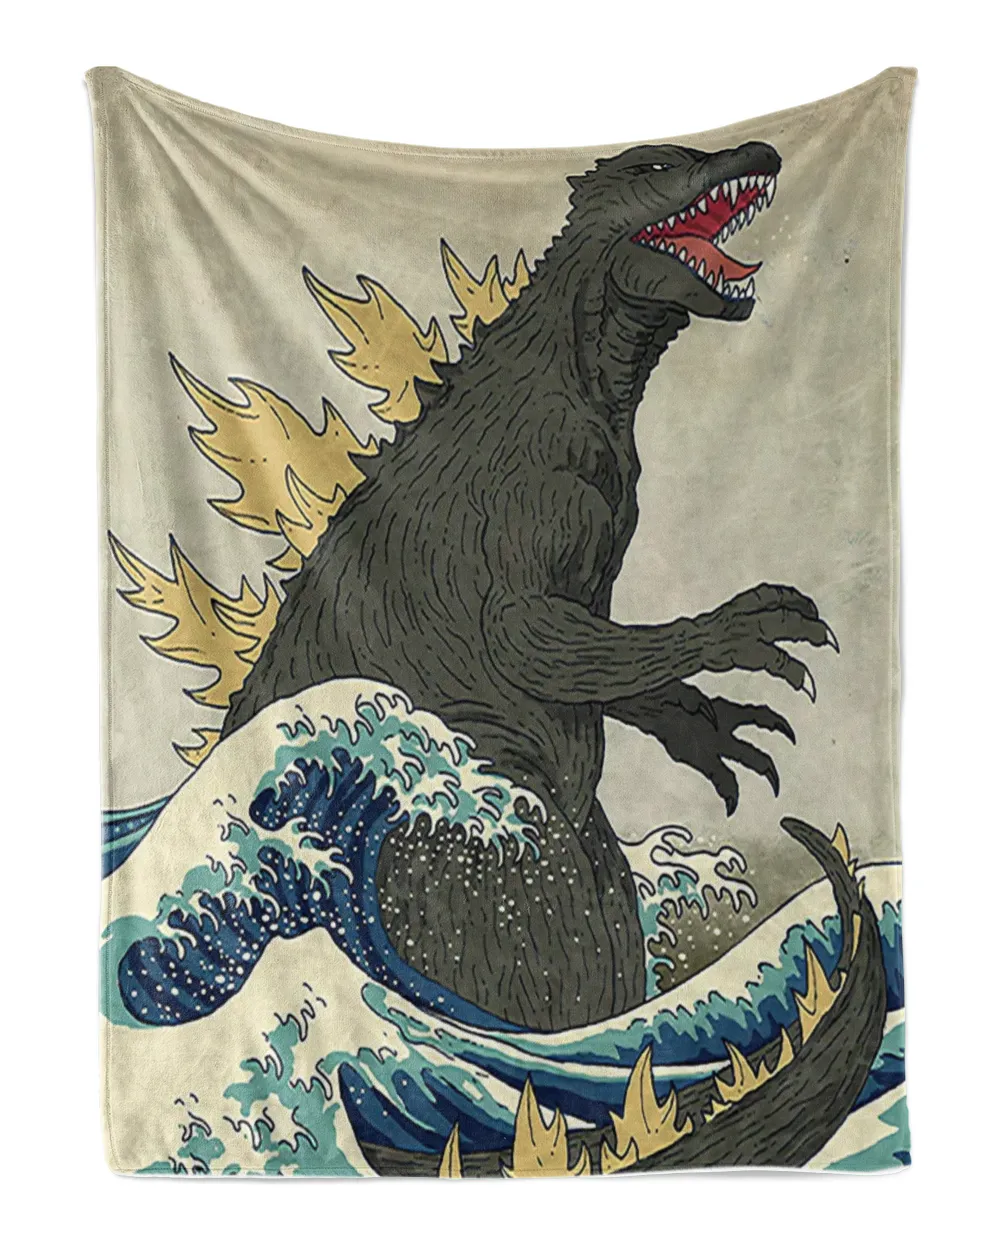 Japanese Monster Blanket, Blanket Soft Throw Blanket for Living Room Japanese Decor Warm Blanket Plush Gift